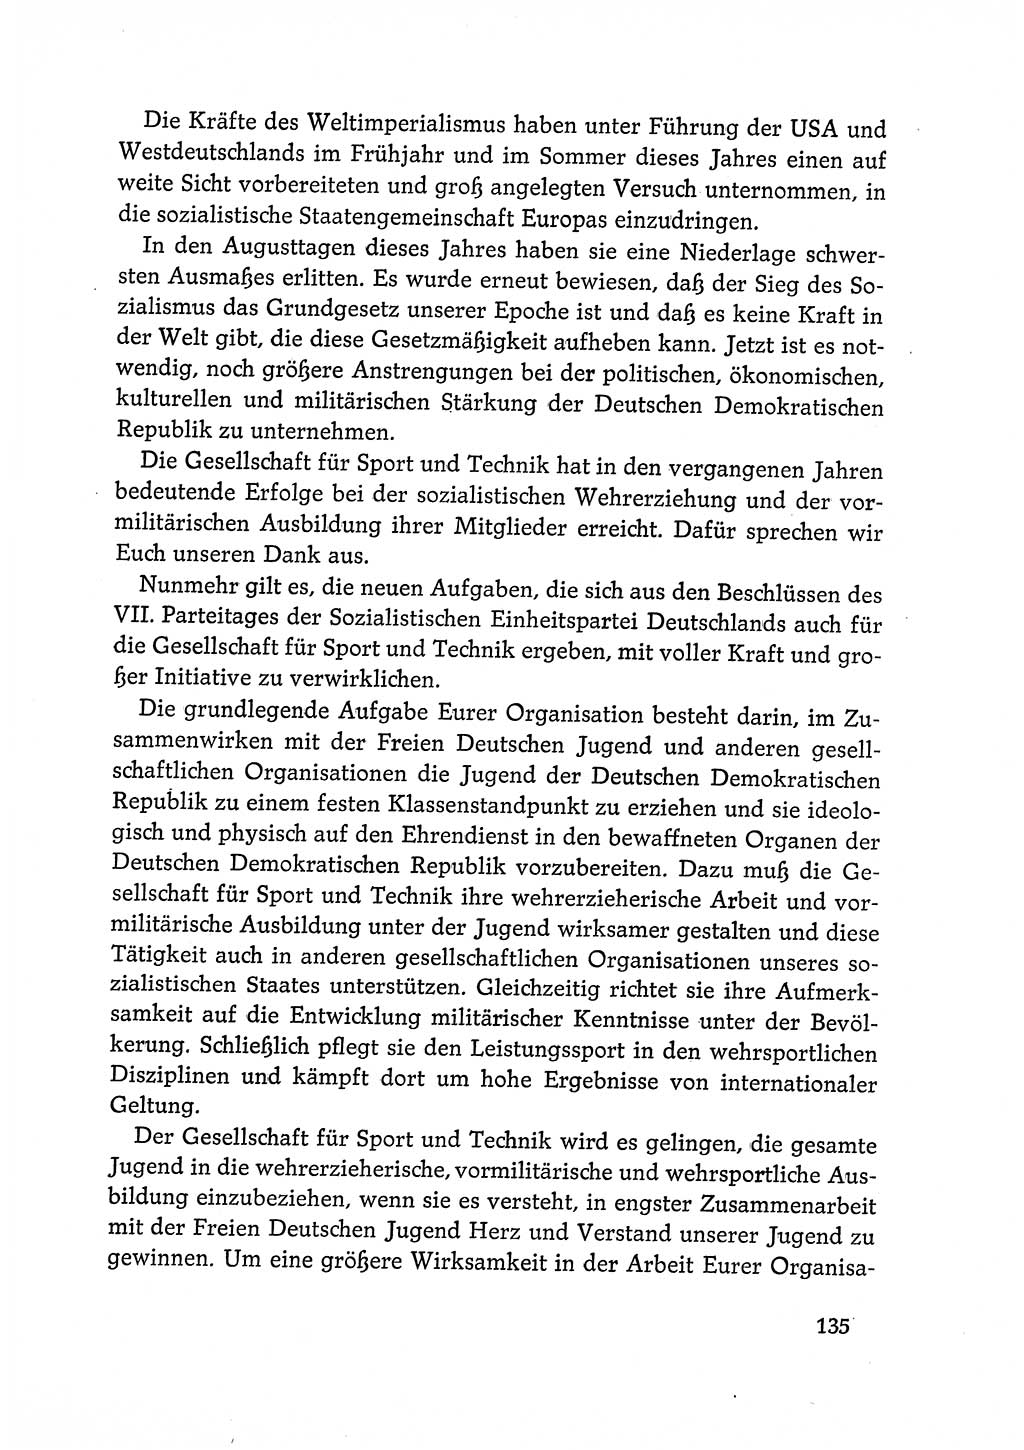 Dokumente der Sozialistischen Einheitspartei Deutschlands (SED) [Deutsche Demokratische Republik (DDR)] 1968-1969, Seite 135 (Dok. SED DDR 1968-1969, S. 135)